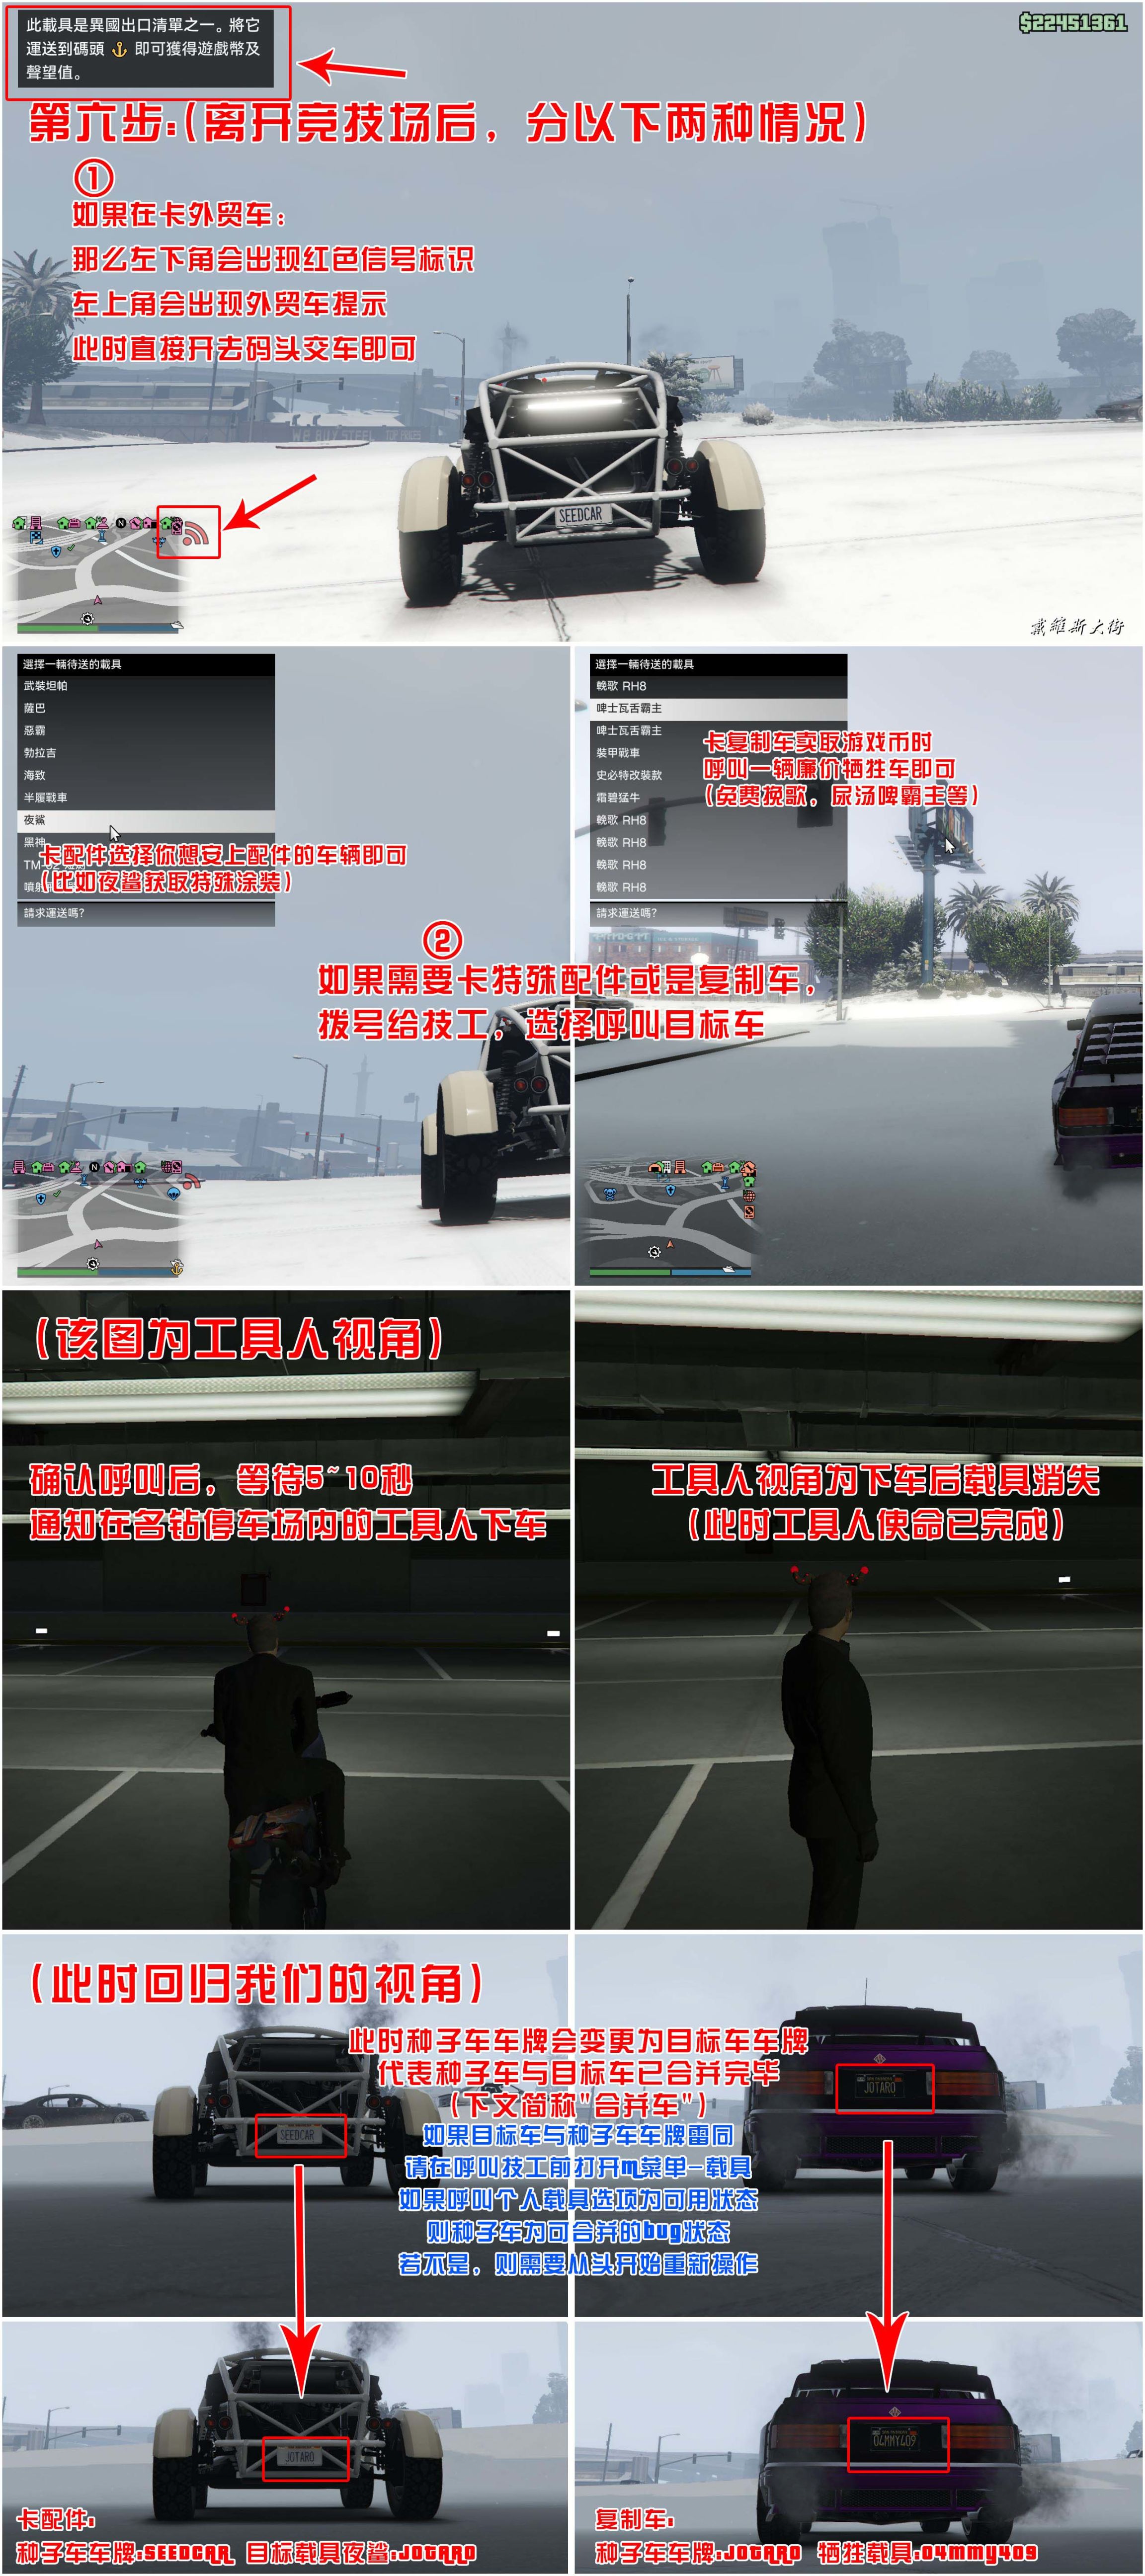 【俠盜獵車手5】GTA 在線模式攻略：獲取載具隱藏塗裝&複製車&變造外貿載具-第6張